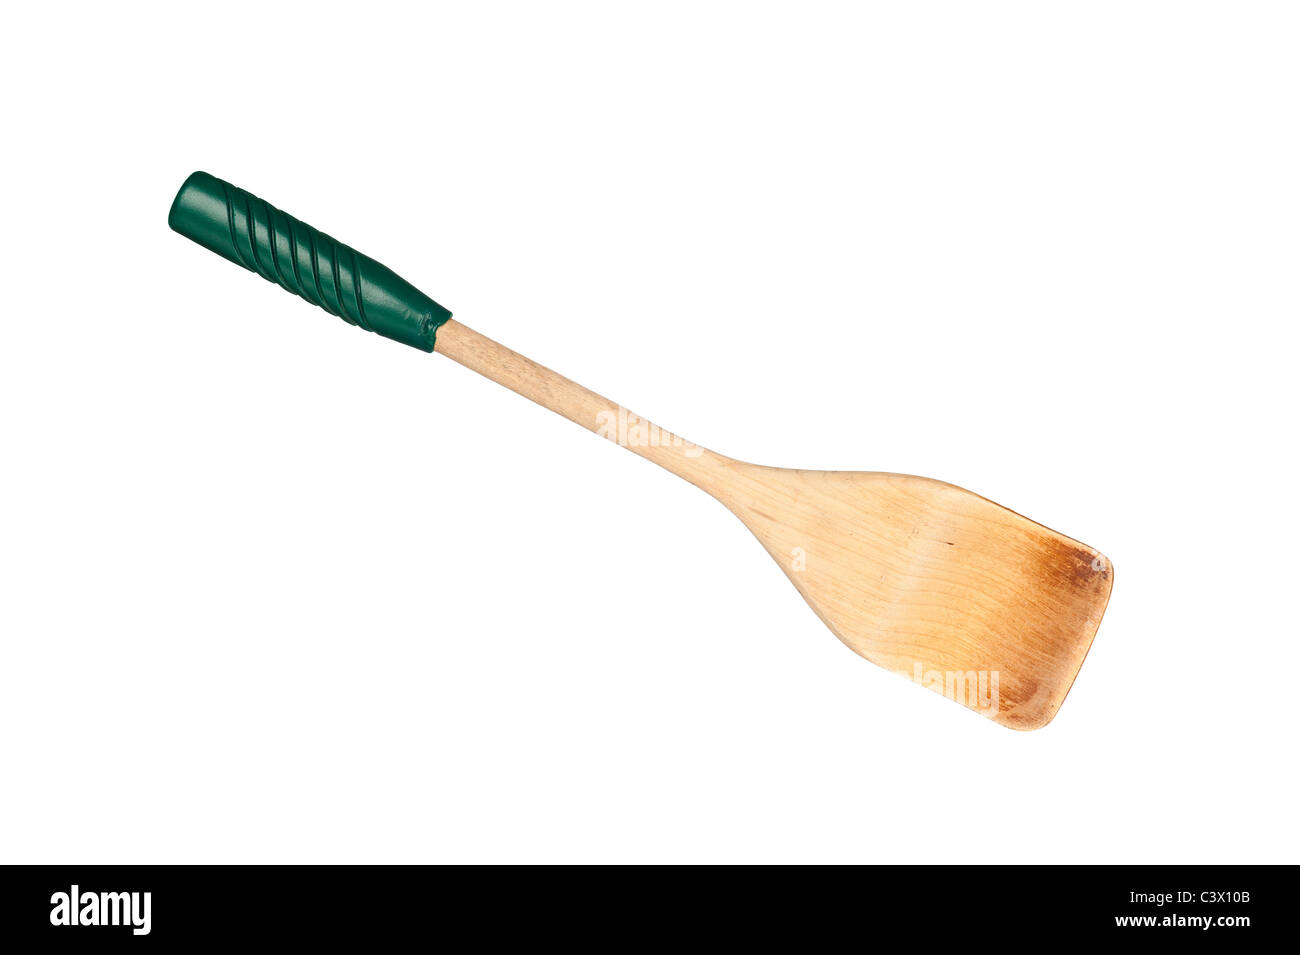 D'une spatule en bois avec poignée en vinyle vert isolated on white Banque D'Images